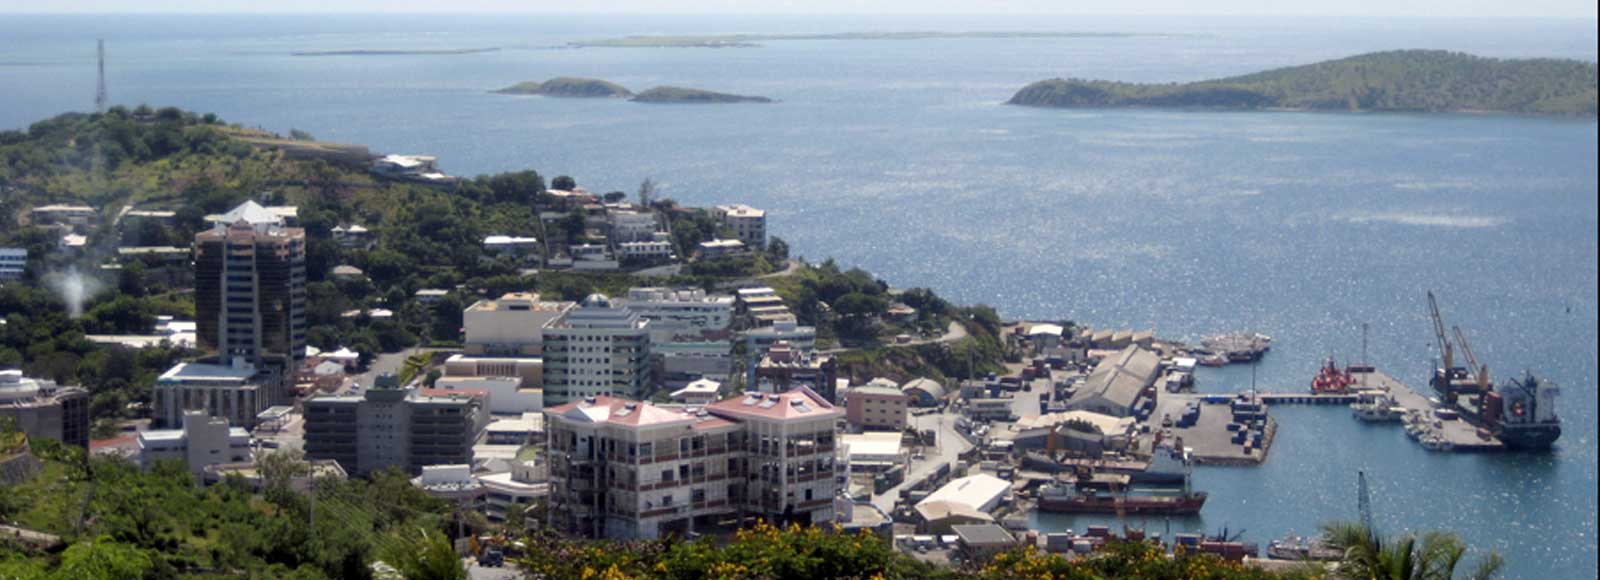 Ofertas de Traslados en Port Moresby. Traslados económicos en Port Moresby 